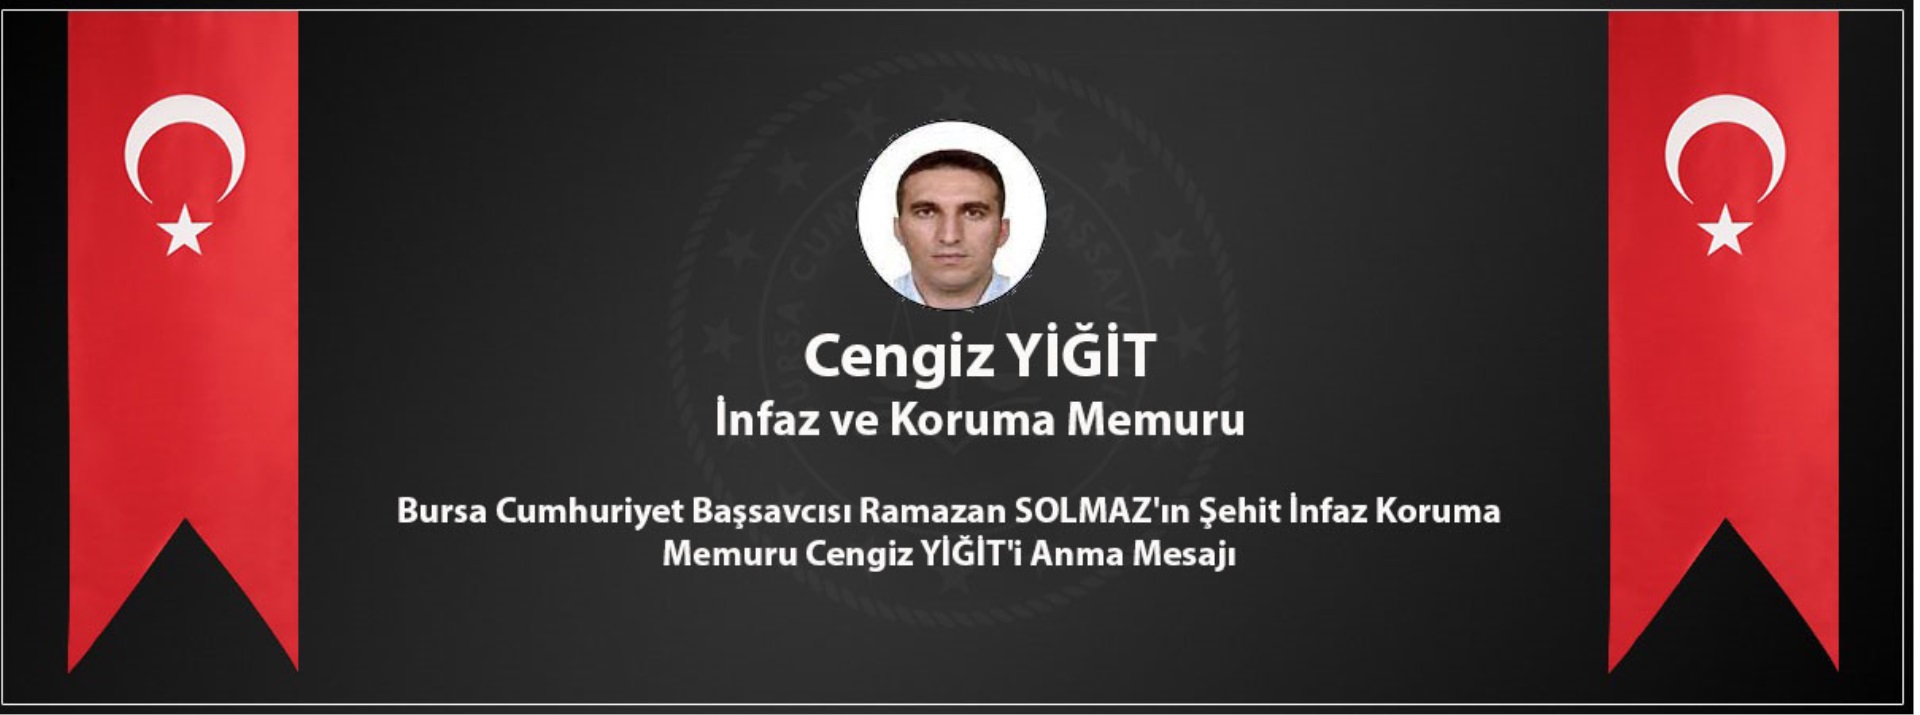 Bursa Cumhuriyet Başsavcısı Ramazan SOLMAZ’ın Şehit İnfaz Koruma Memuru Cengiz YİĞİT’i Anma Mesajı